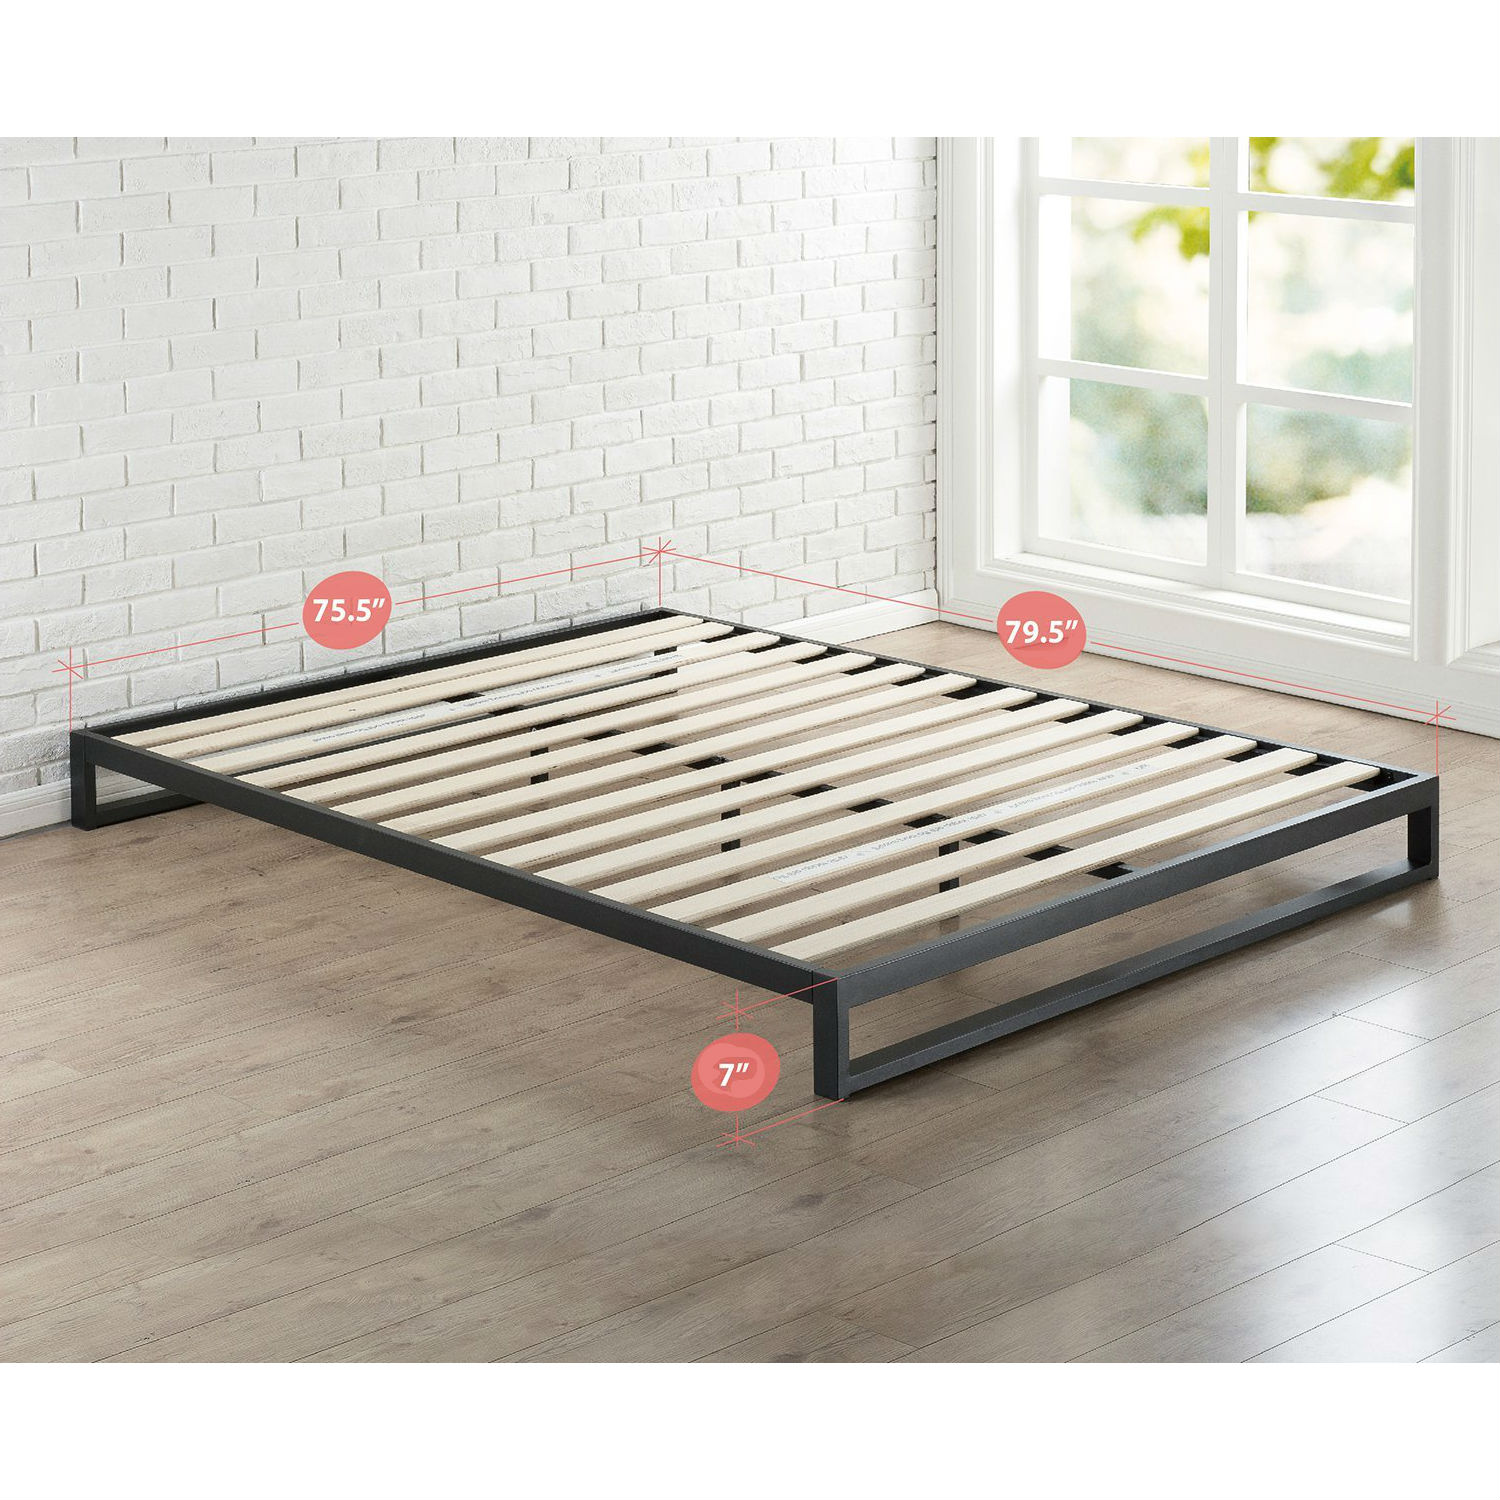 Low Profile Metal Platform Bed Frame, High Rise Wood Bed Frame